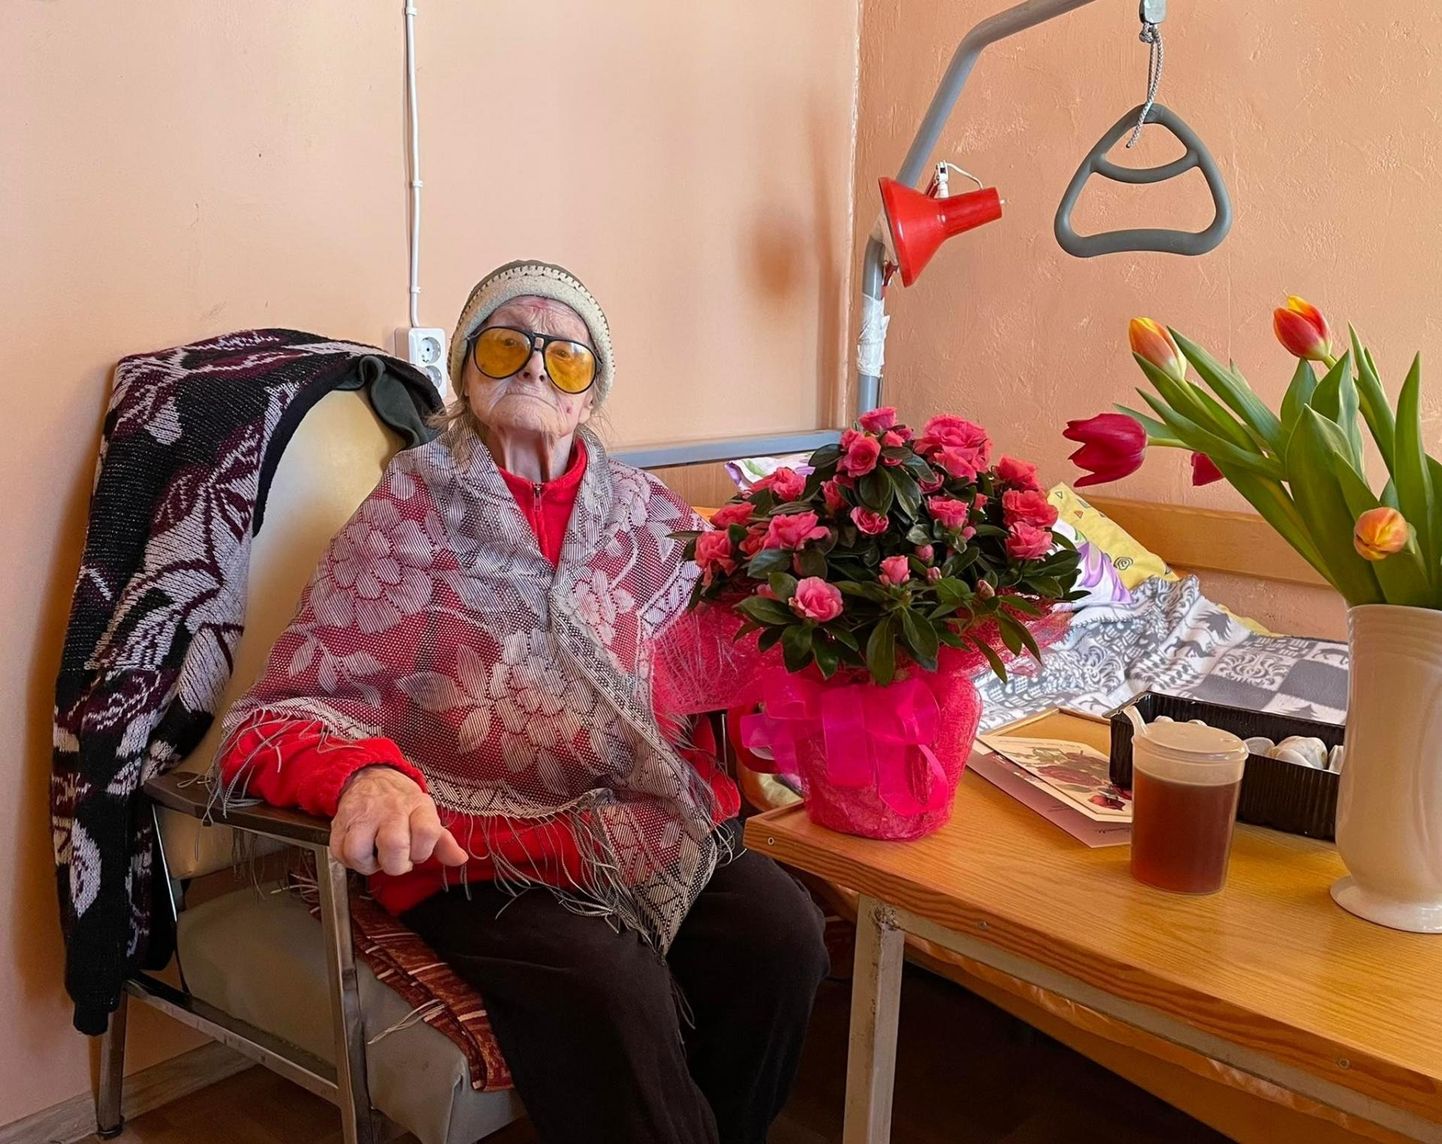 Neljapäeval täitus 101 eluaastat Vinni valla kõige eakamal daamil, kes võttis õnnitlusi vastu Tammiku hooldekodus. Palju õnne, Laine Väinaste!